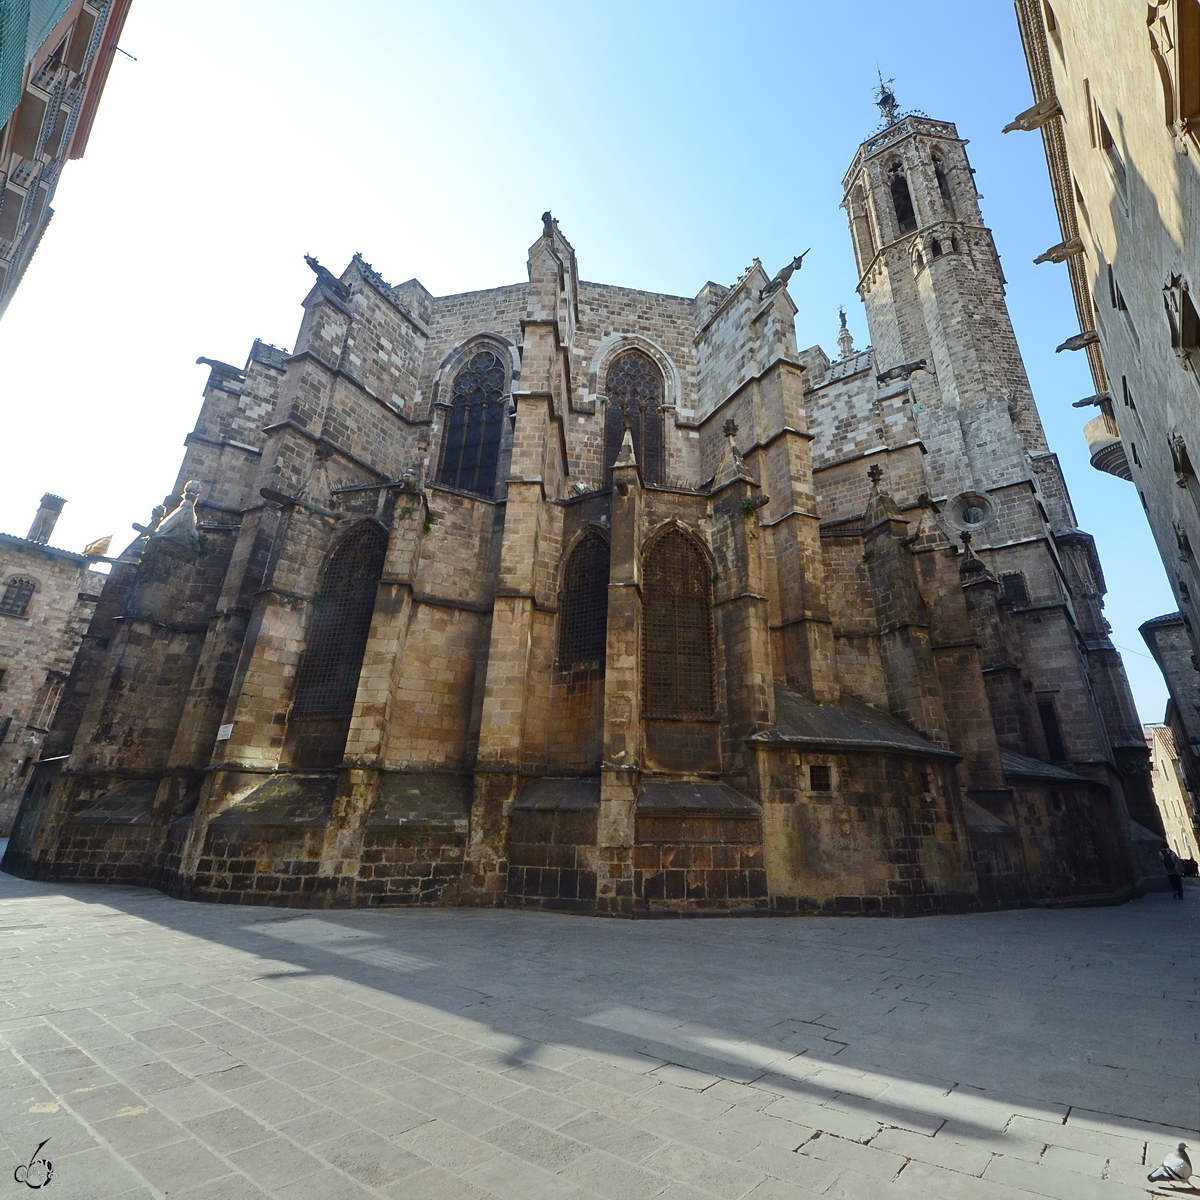 Die Catedral Santa Maria del Mar ist eine zwischen 1329 und 1383 gebaute gotische Kirche in Barcelona. (Februar 2012)